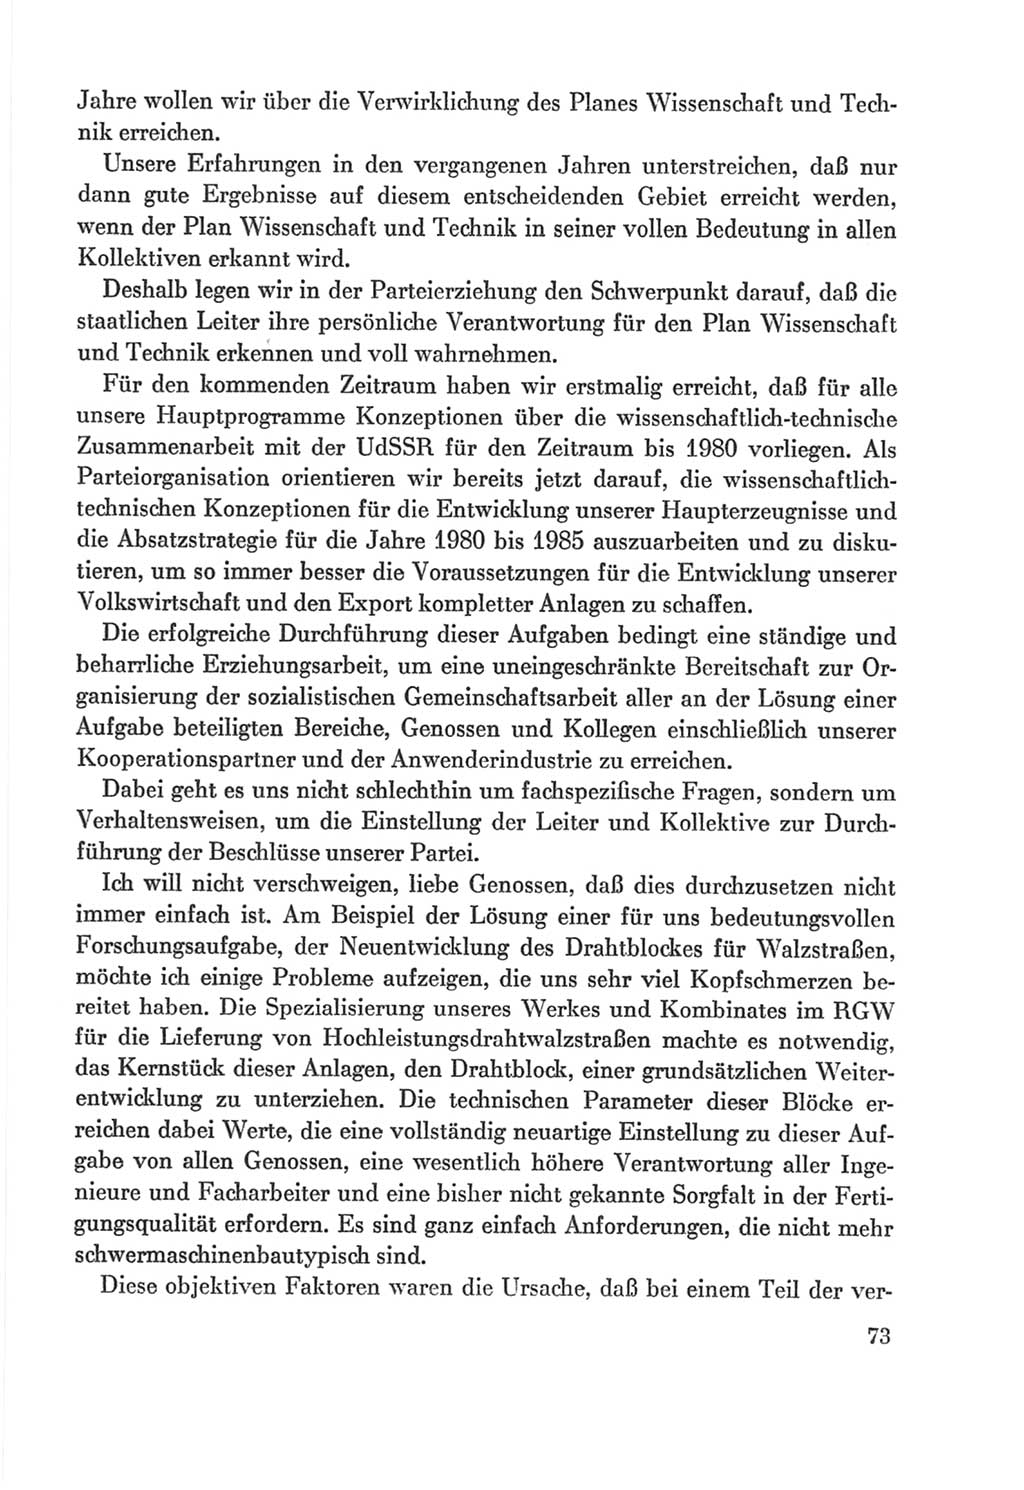 Protokoll der Verhandlungen des Ⅸ. Parteitages der Sozialistischen Einheitspartei Deutschlands (SED) [Deutsche Demokratische Republik (DDR)] 1976, Band 2, Seite 73 (Prot. Verh. Ⅸ. PT SED DDR 1976, Bd. 2, S. 73)